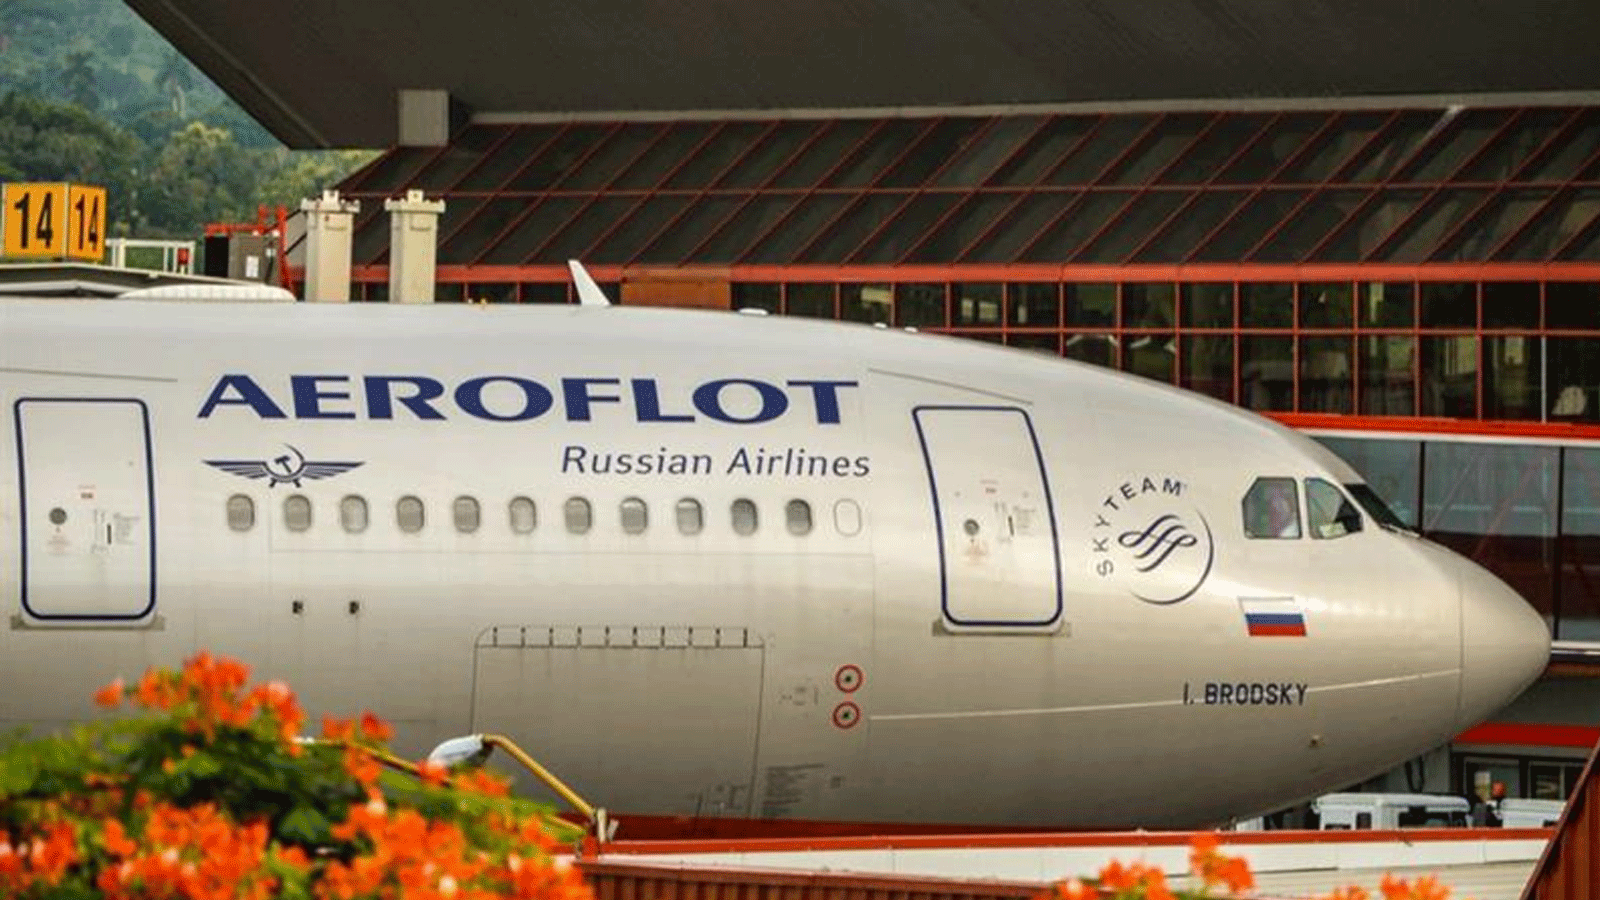 طائرة تابعة للخطوط الجوية الروسية آيروفولت